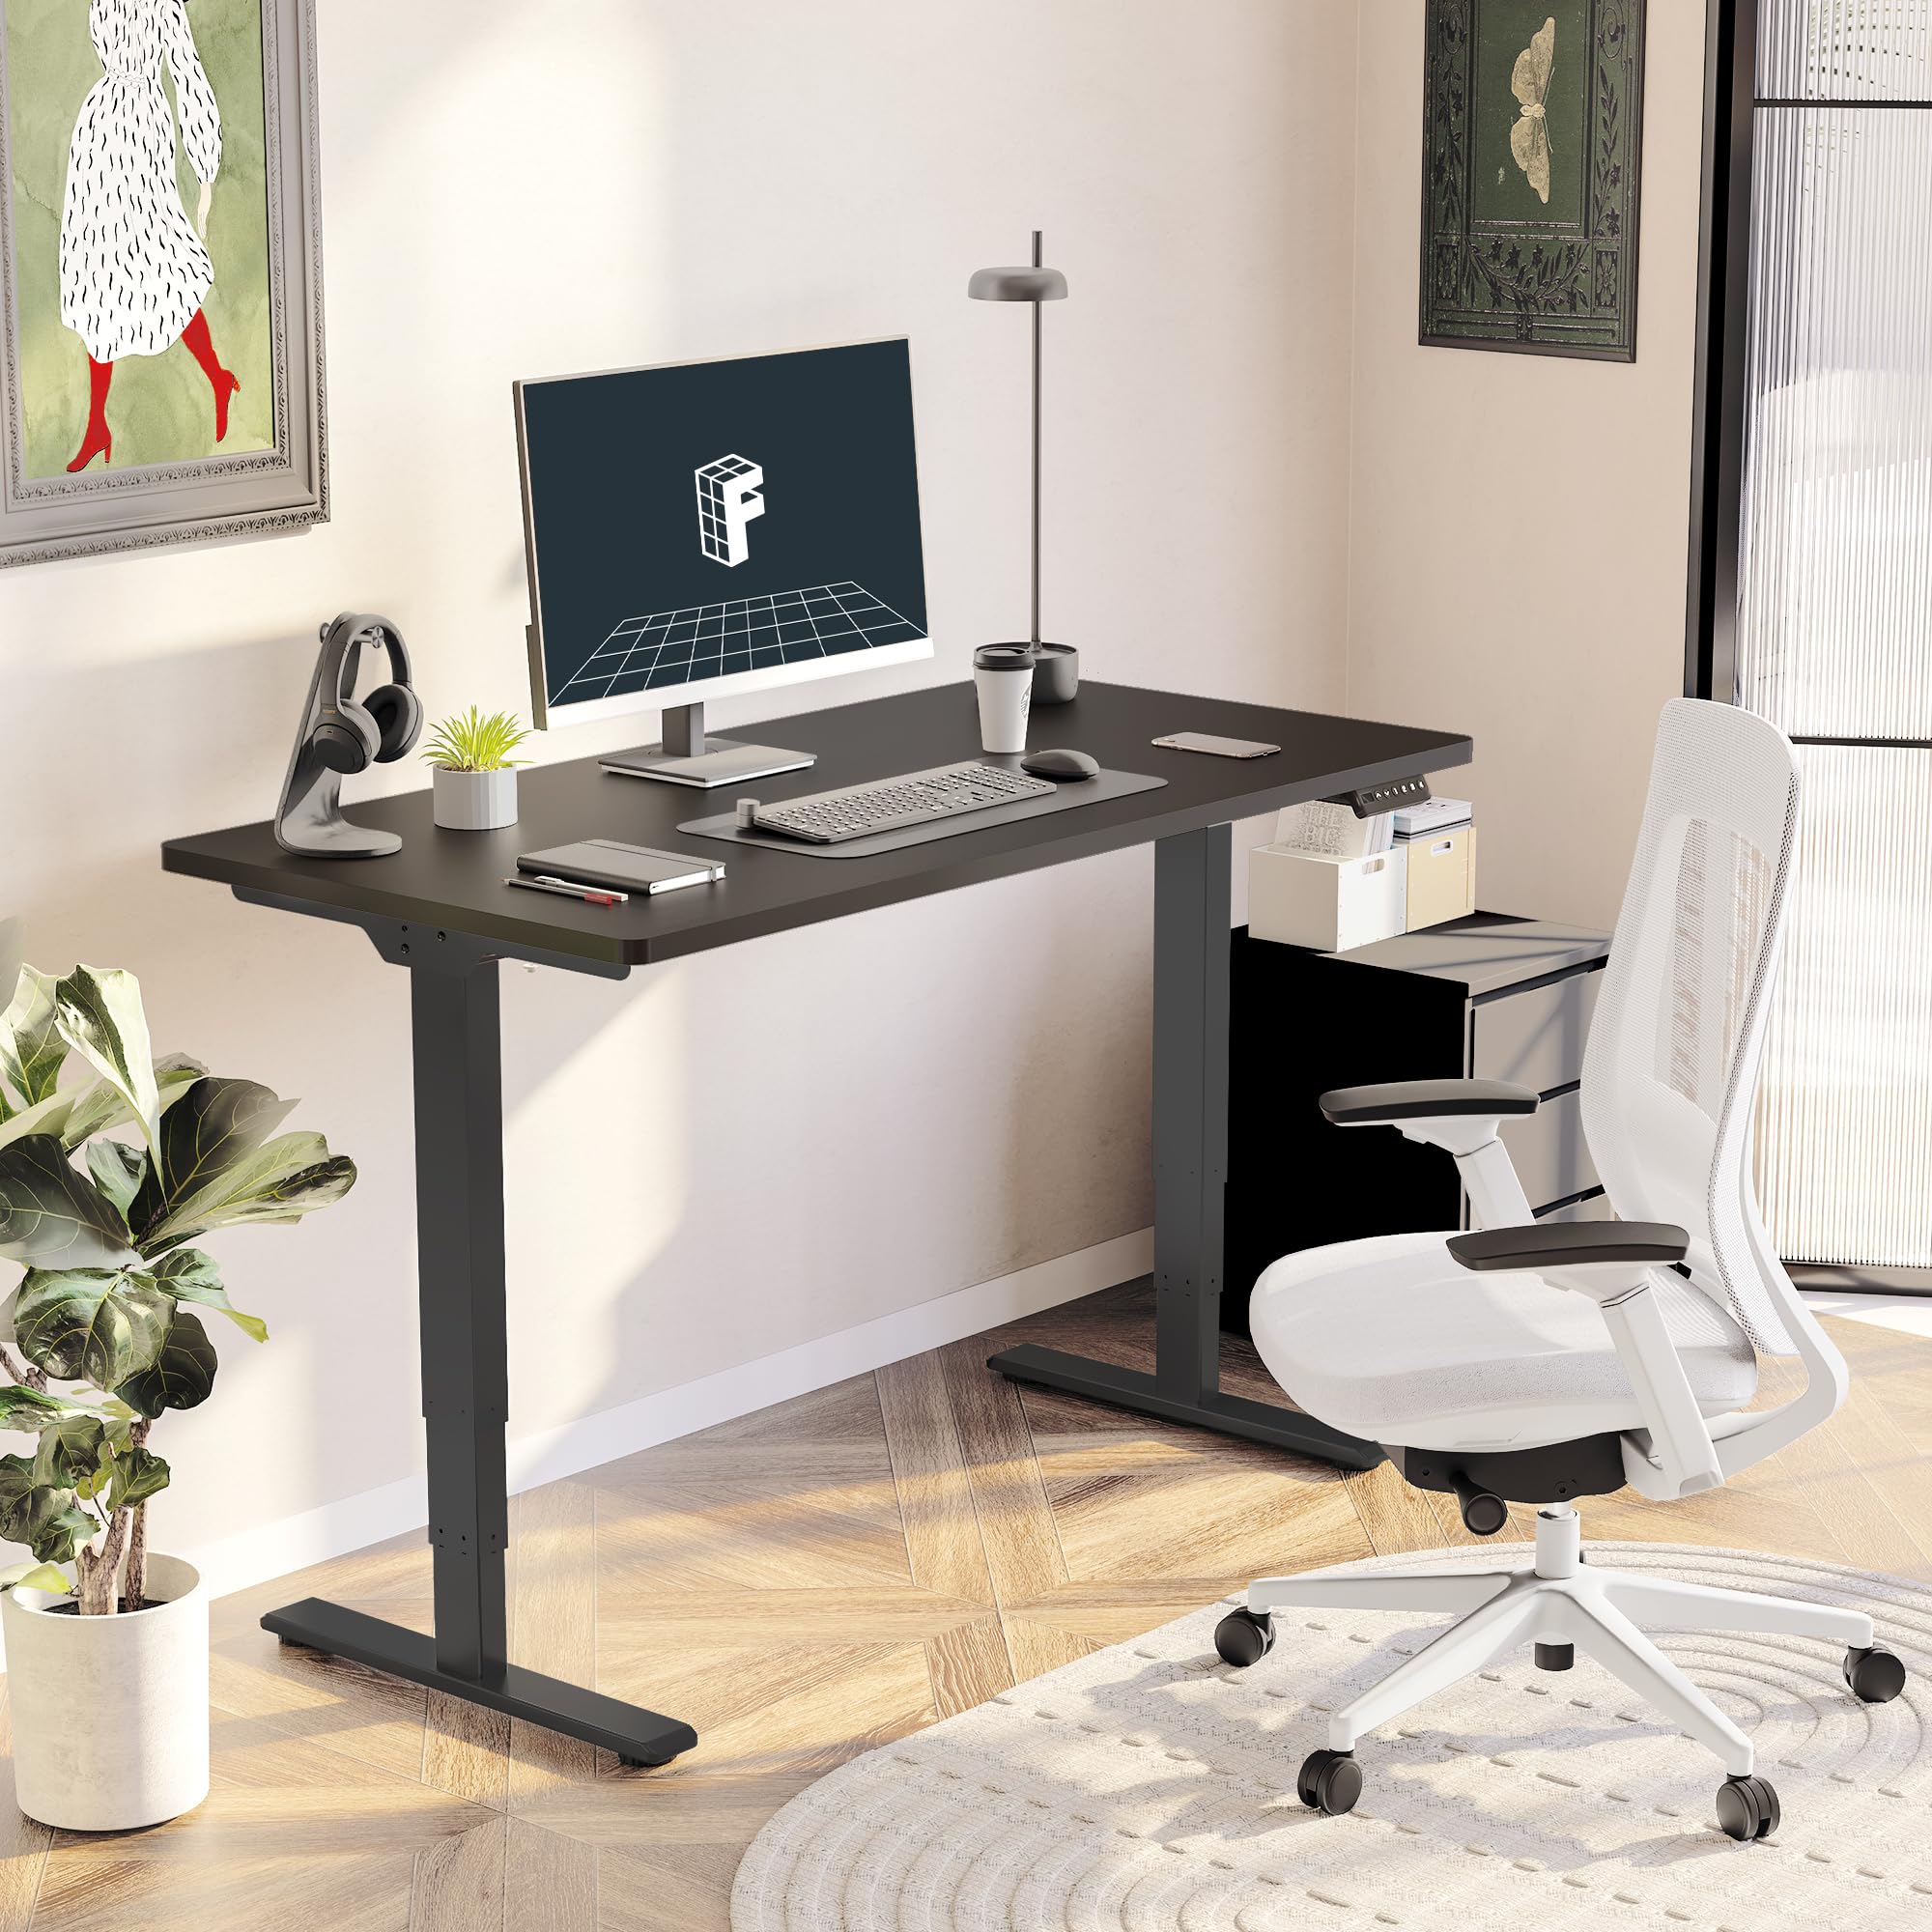 FLEXISPOT Standing Desk Dual Motor 3 Stages Whole-Piece Electric Stand Up Desk 55x28 Inch Height Adjustable Desk Home Office Desk (Black Frame + Black Desktop, 2 Packages)